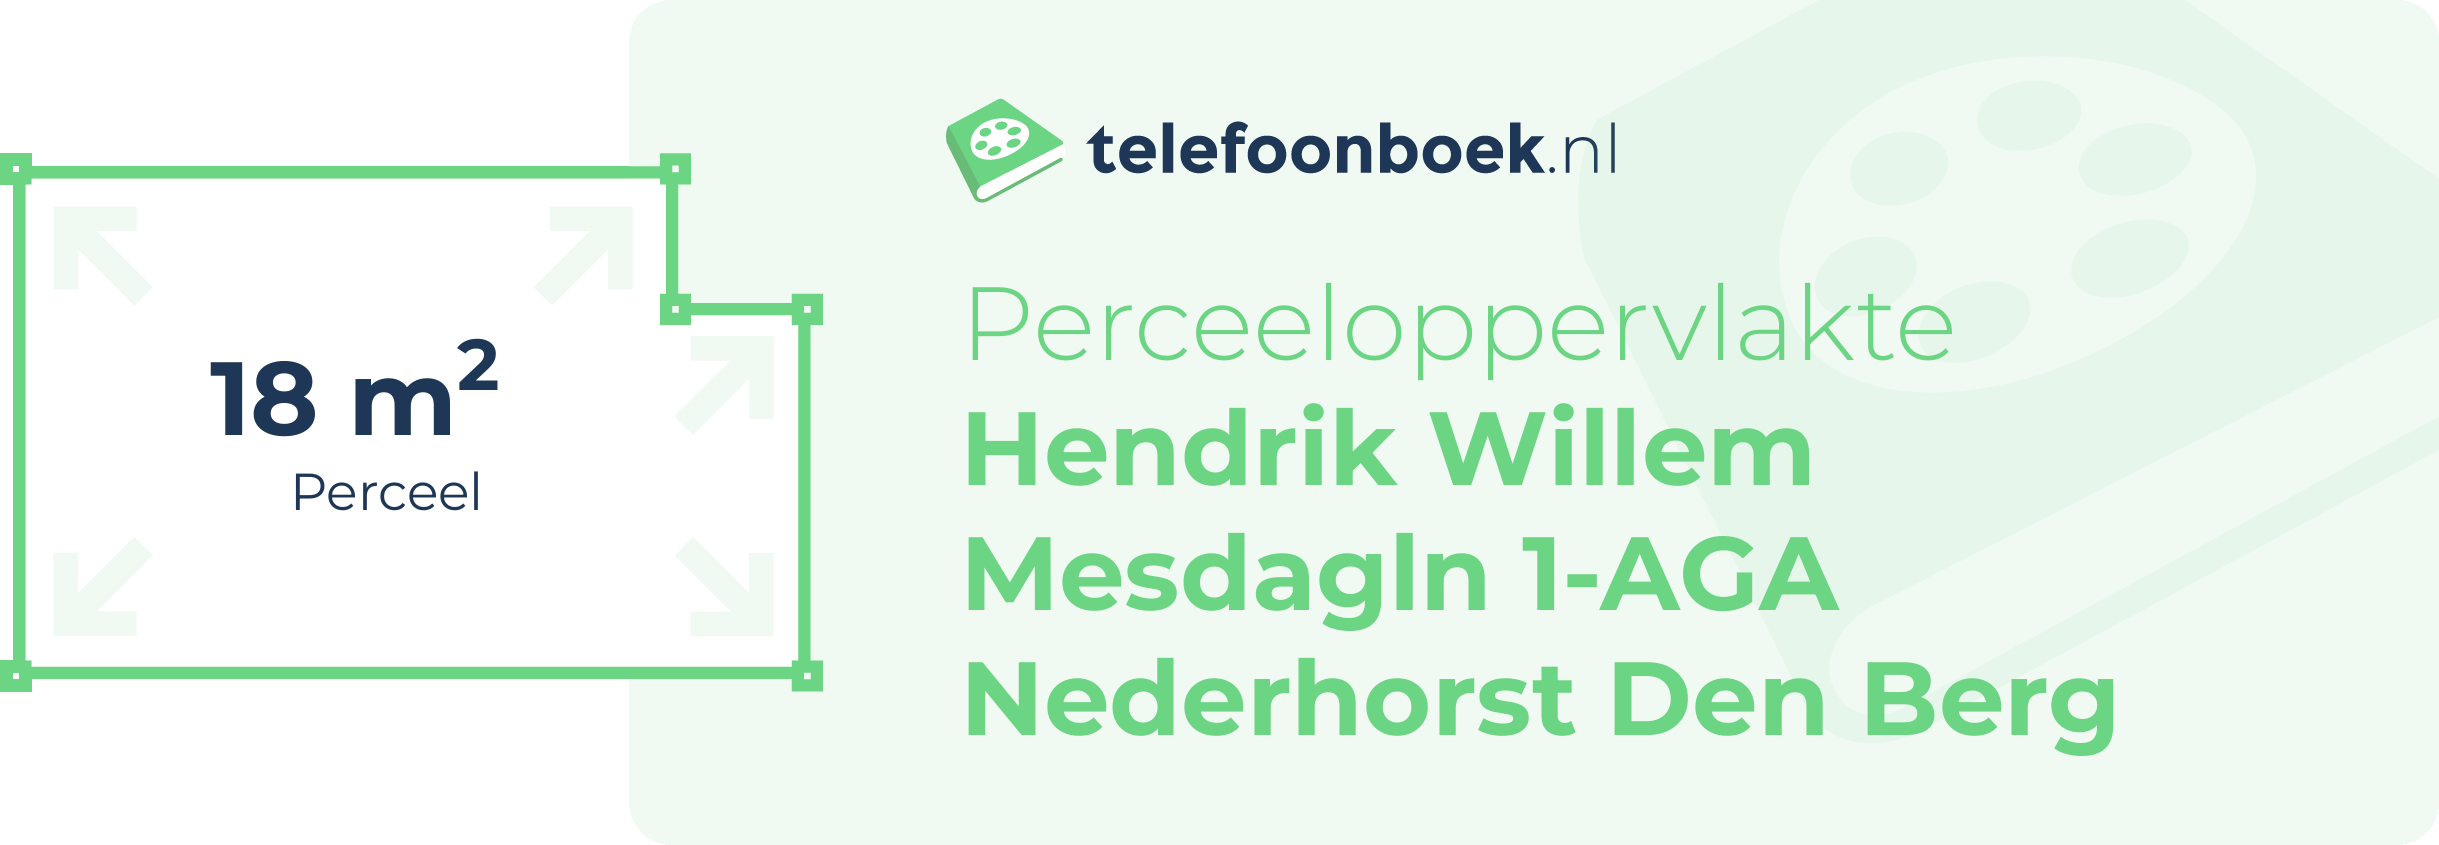 Perceeloppervlakte Hendrik Willem Mesdagln 1-AGA Nederhorst Den Berg